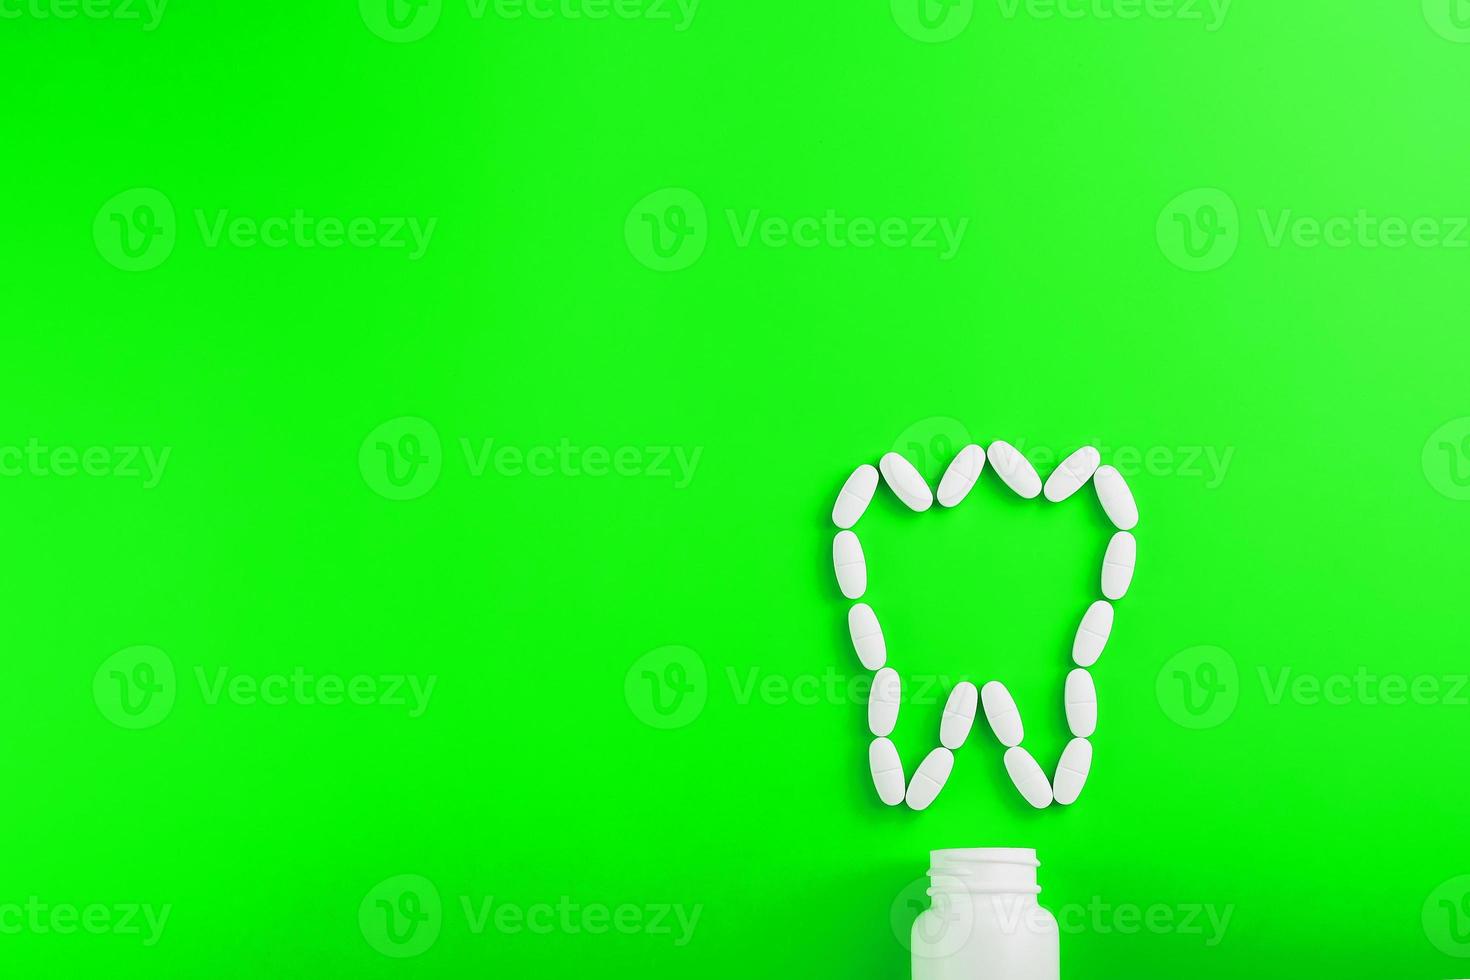 kalcium vitamin i de form av en tand spillts ut av en vit burk på en grön bakgrund. foto